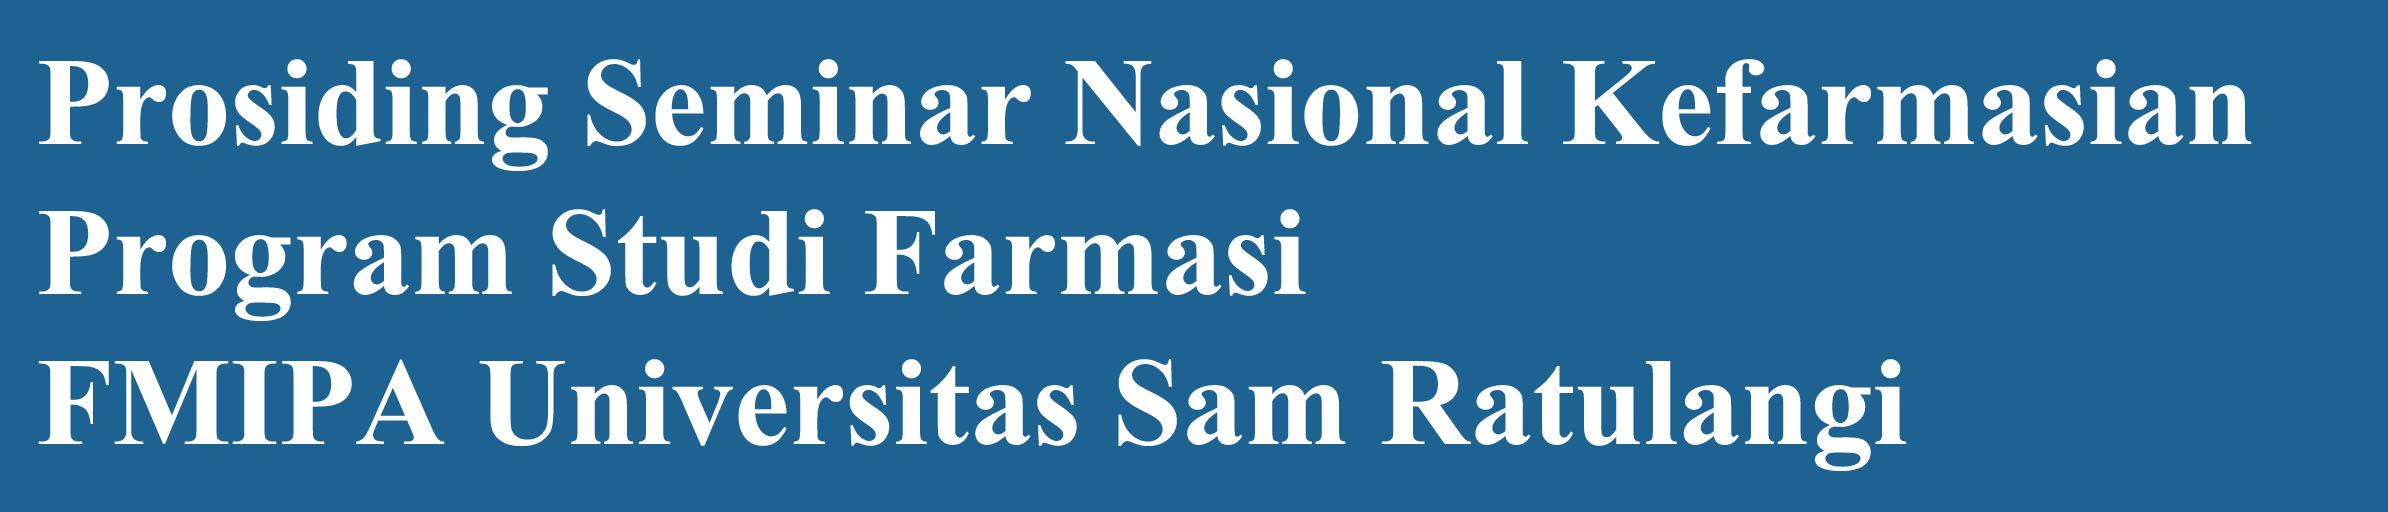 Prosiding Seminar Nasional Kefarmasian dikelola oleh Program Studi Farmasi di Fakultas MIPA Universitas Sam Ratulangi. Prosiding ini diterbitkan satu tahun satu kali berdasarkan seminar nasional yang dilakukan.